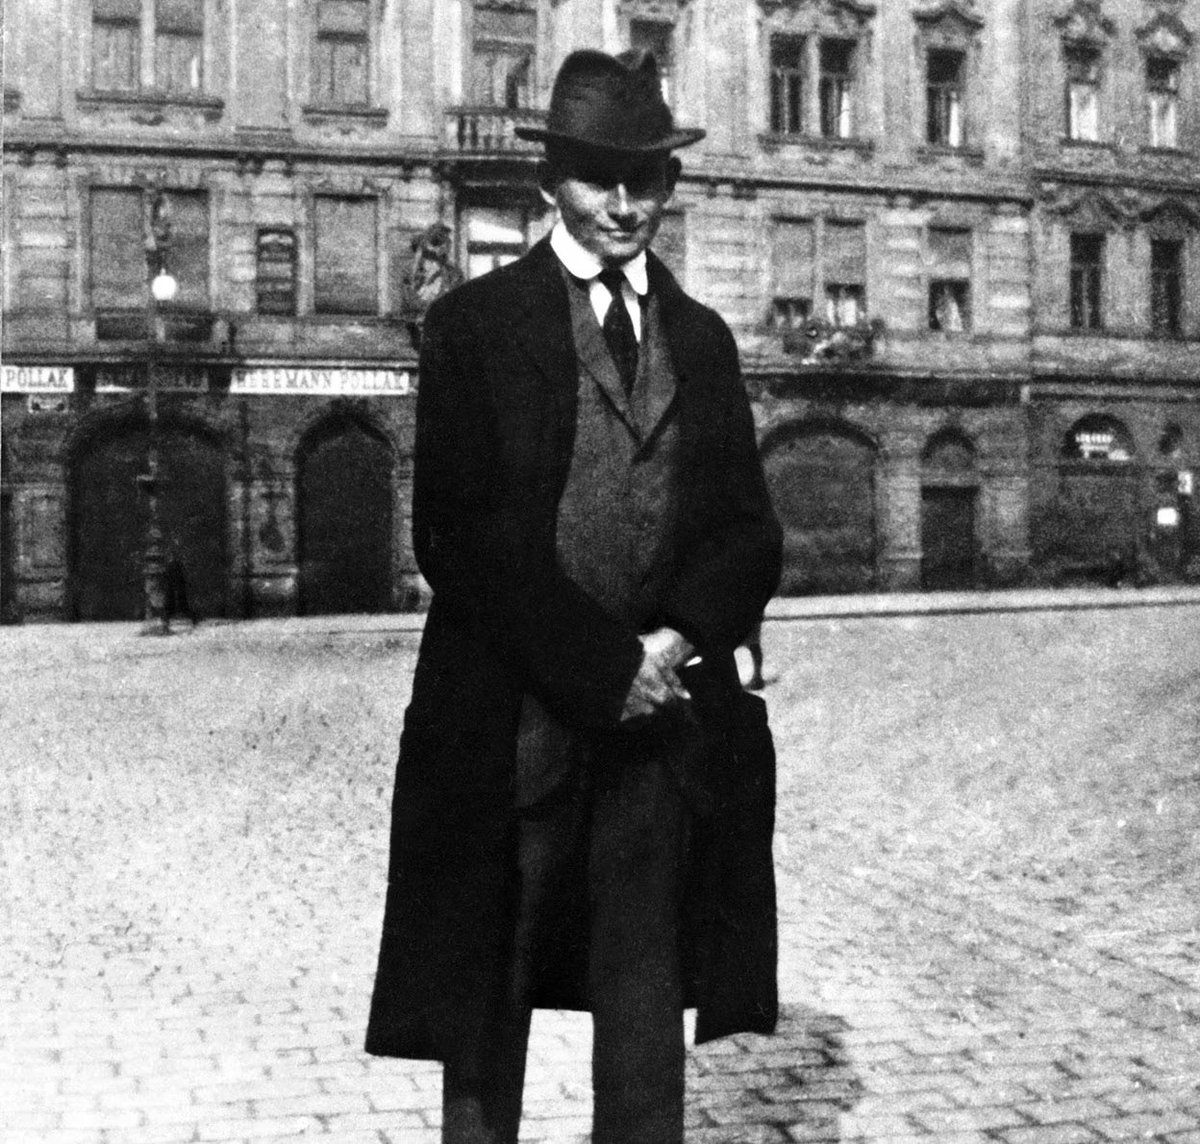 Hace 100 años falleció el gran autor austriaco-checo Franz Kafka de tuberculosis, a los 41 años. Para conmemorar este escritor para quien „la literatura es siempre una expedición a la verdad“ organizamos una serie de exposiciones y charlas. Descubre más: goethe.de/ins/co/es/kul/…